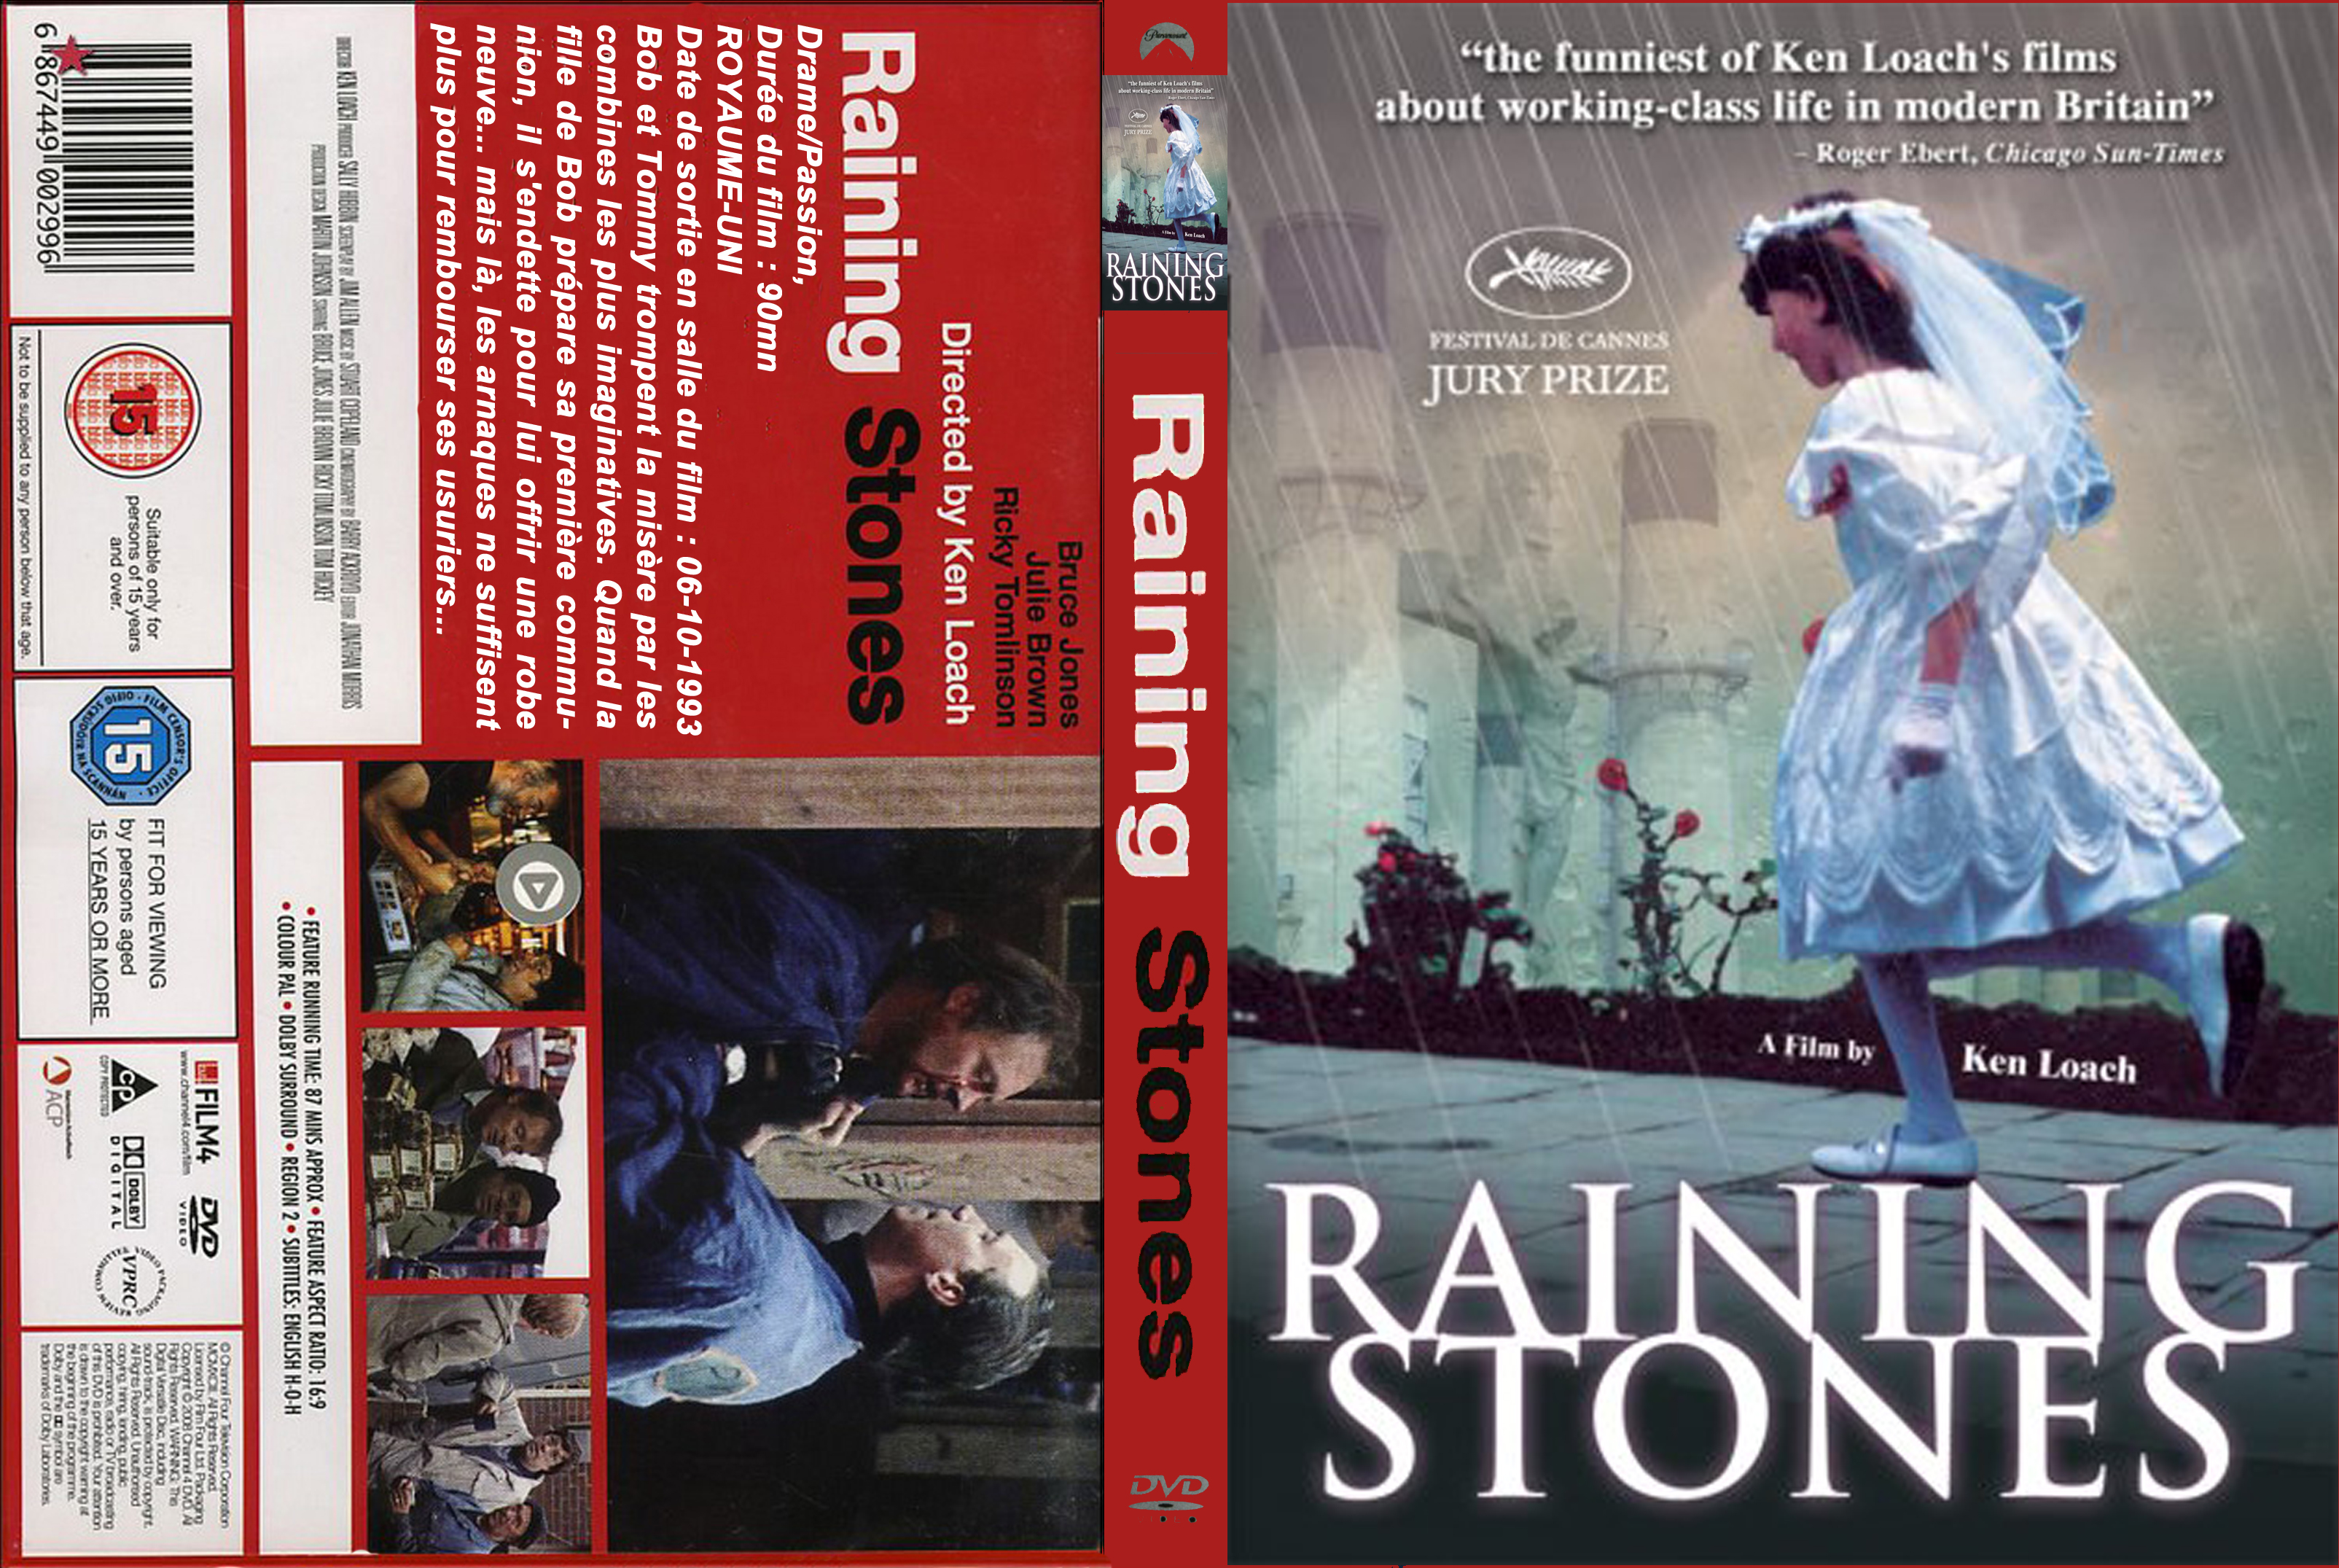 Jaquette DVD Raining stones custom